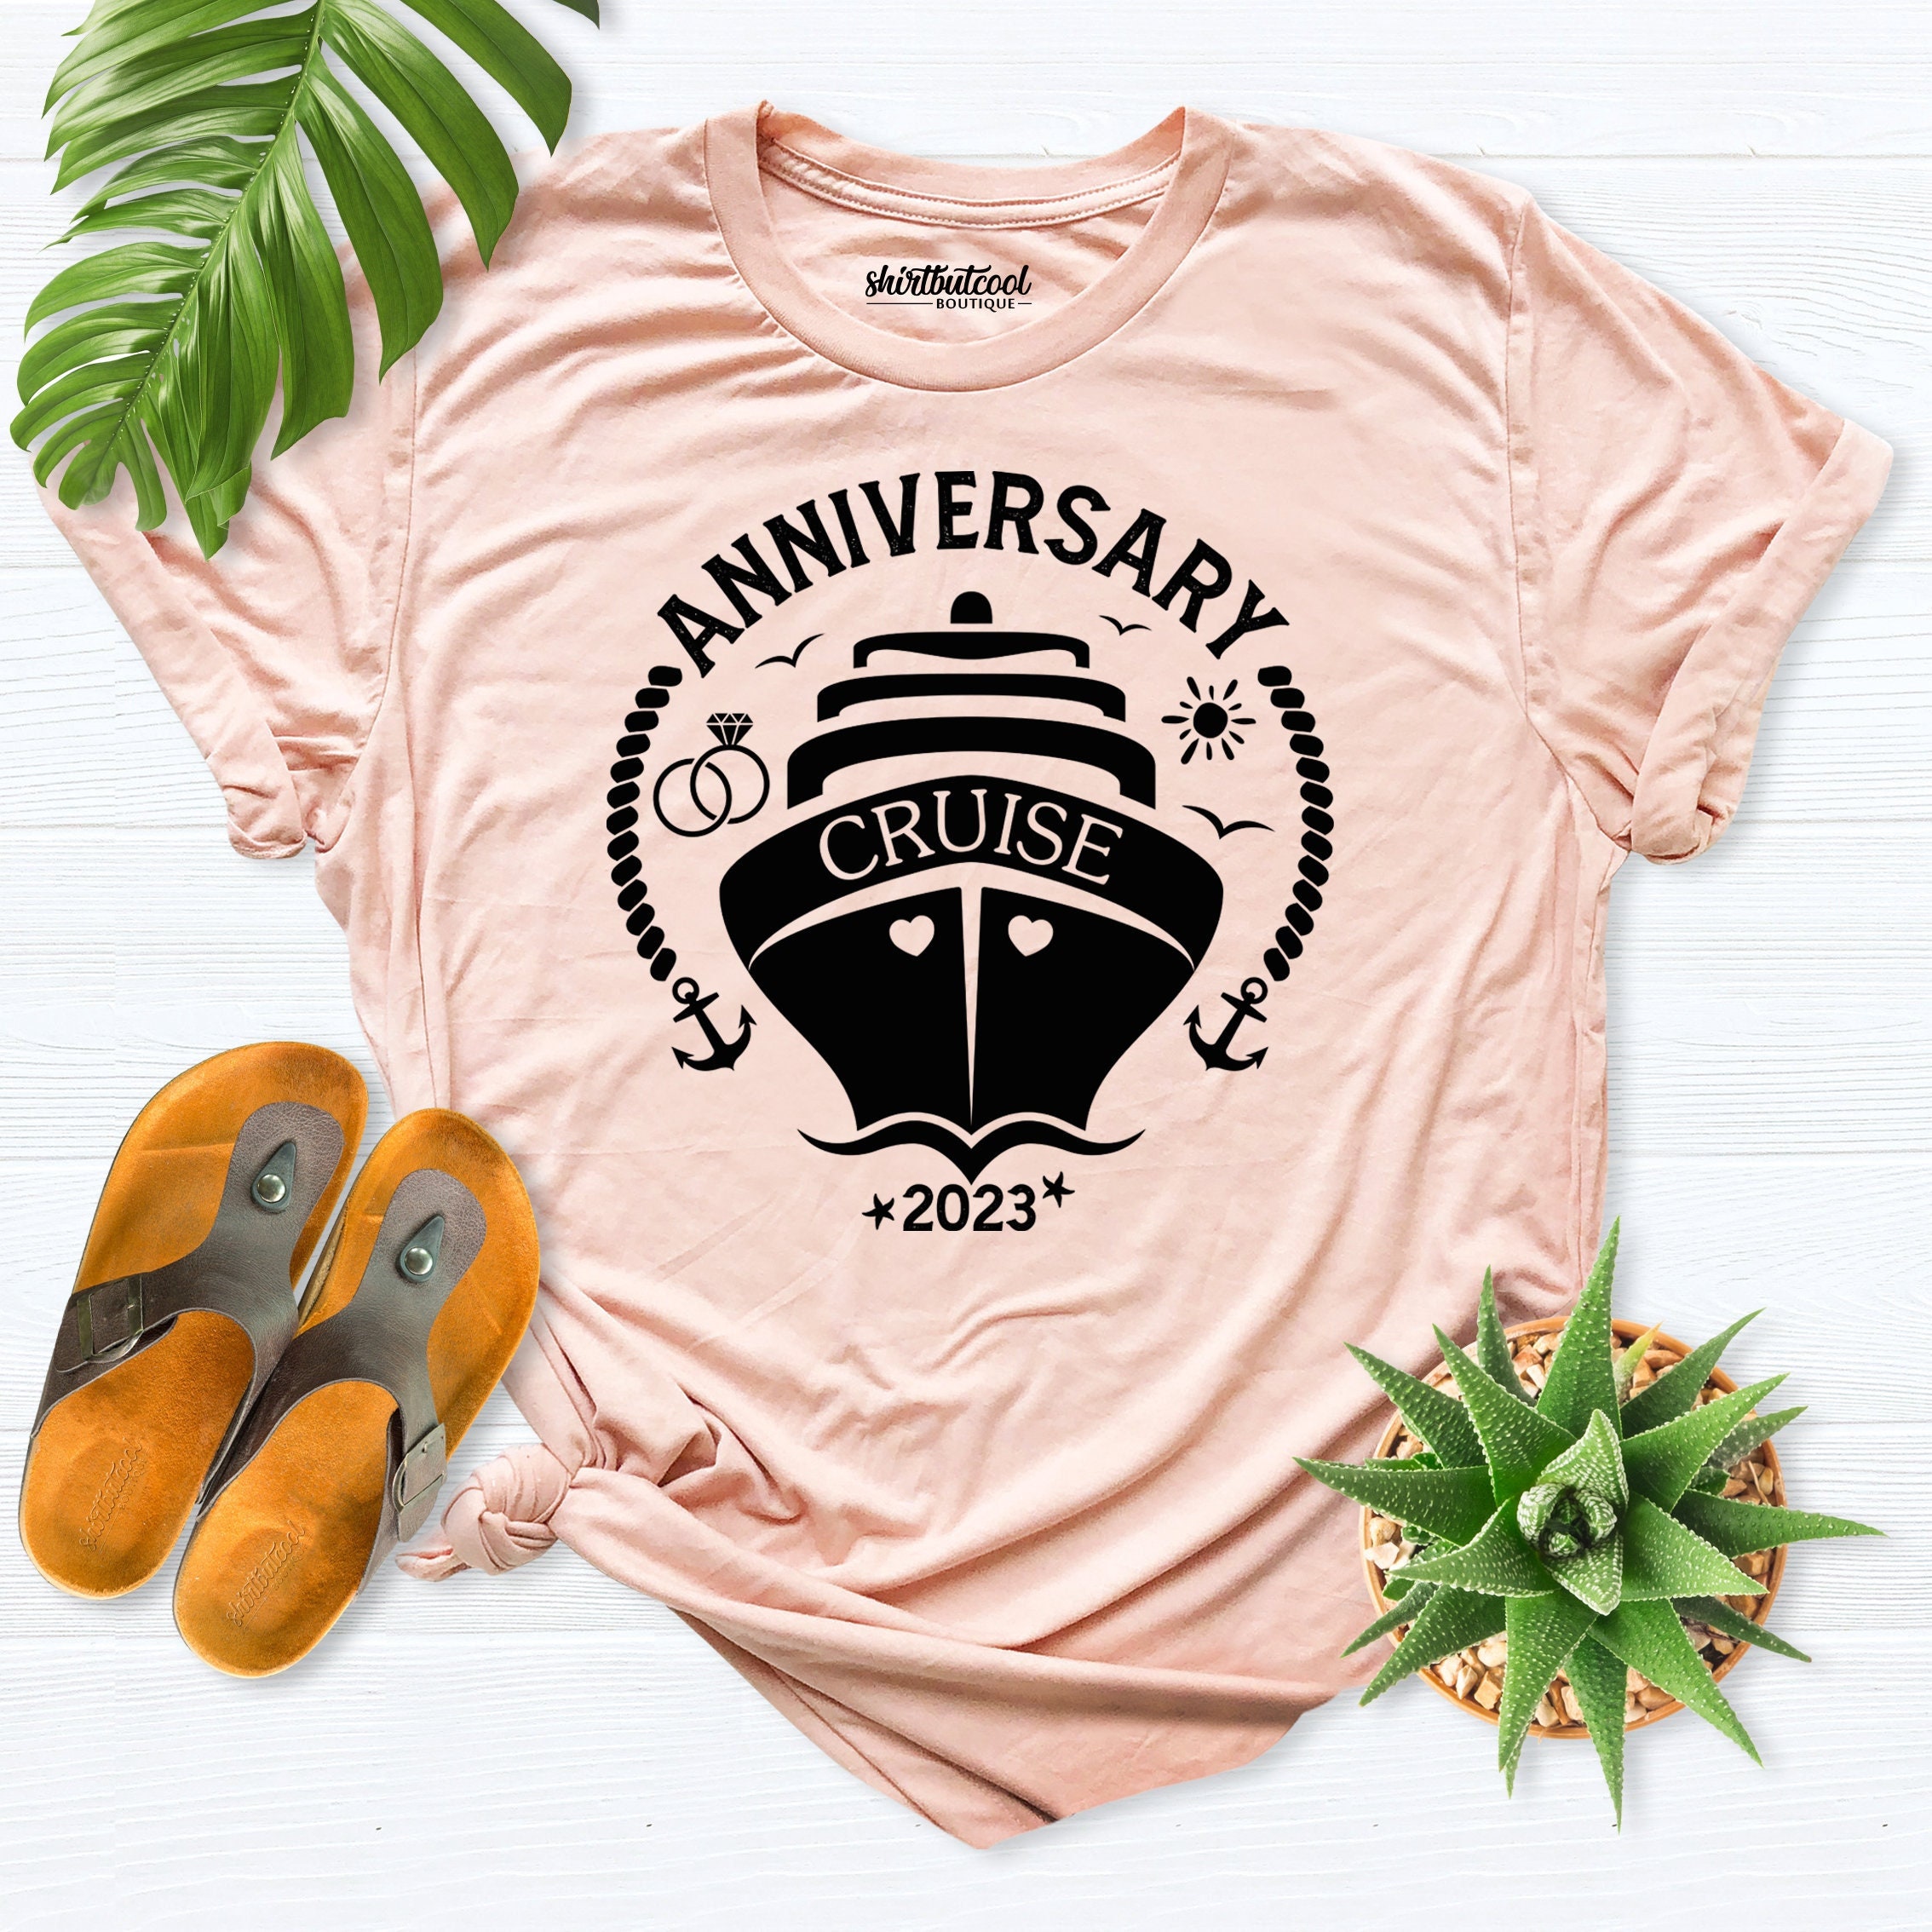 Anniversary Cruise Shirts Cruise Shirt Family Anniversary pic pic pic